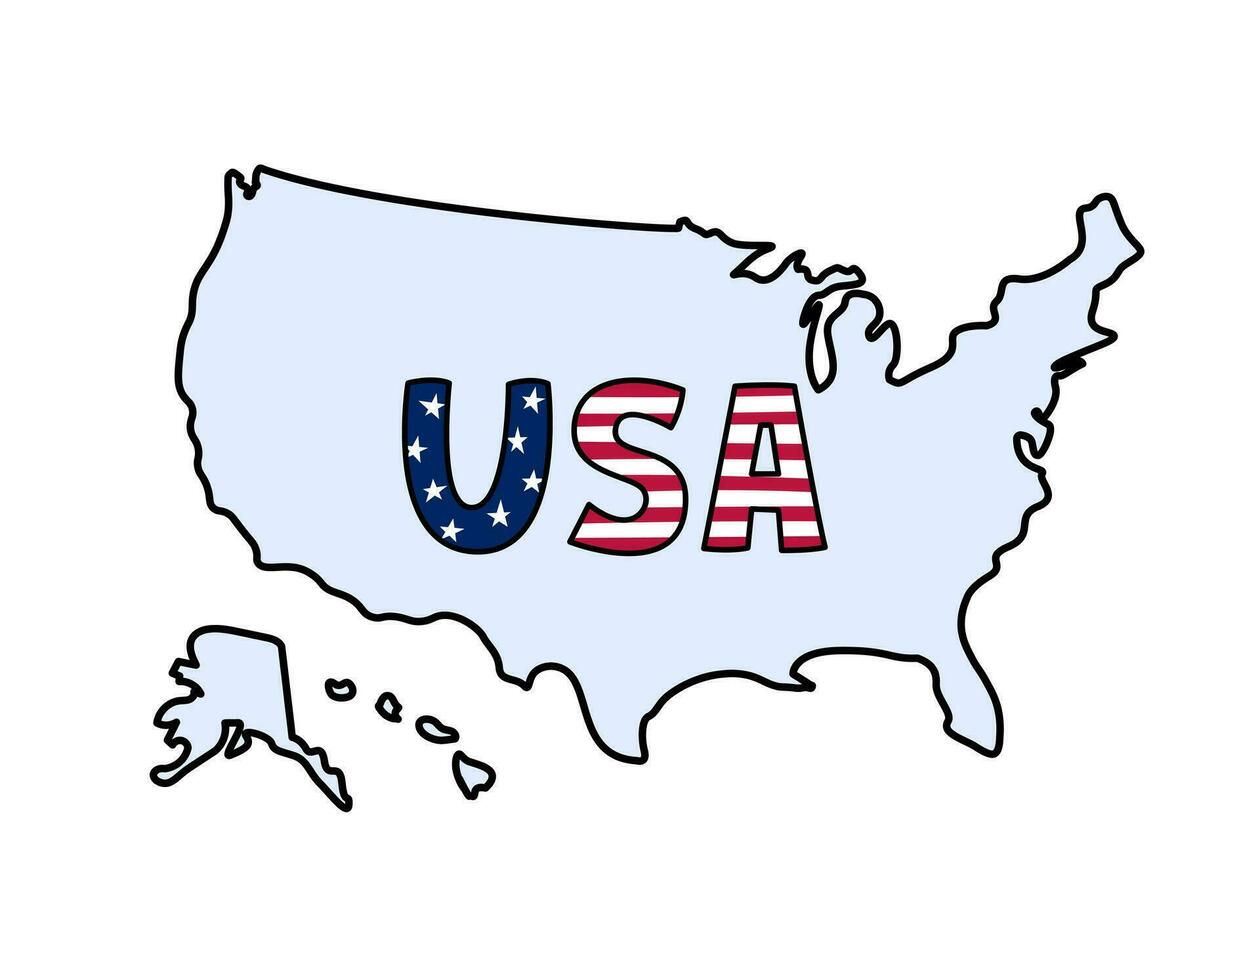 USA Karte Konturen Gekritzel. Vektor Illustration. vereinigt Zustände von Amerika Land. Hand gezeichnet georpaphisch Grenzen mit Alaska und Hawaii, Text USA.